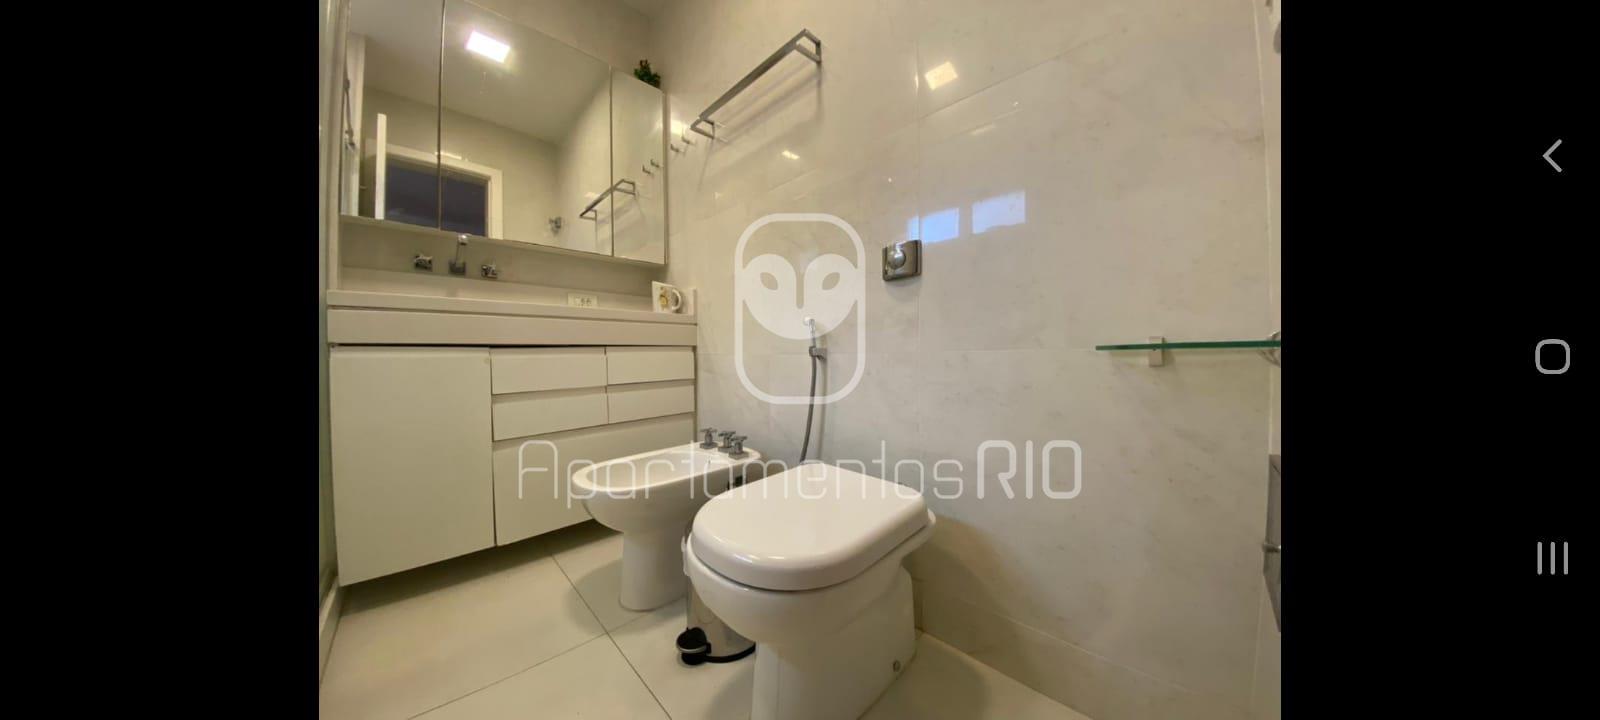 banheiro reformado obertura a venda no Flamengo.jpg